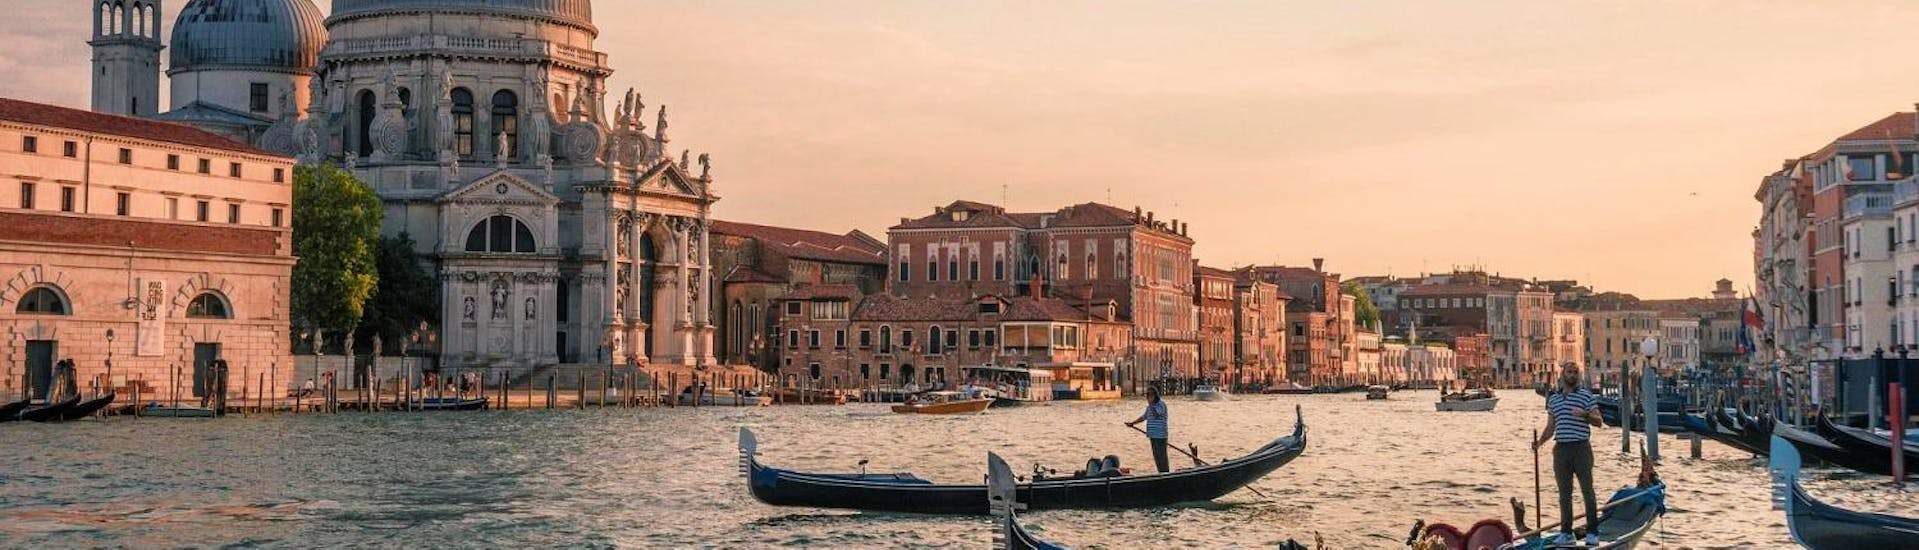 Vue enchanteresse du Grand Canal pendant le Tour privé en gondole depuis la place Saint-Marc le long des canaux à Venise avec Park View Viaggi Venice.